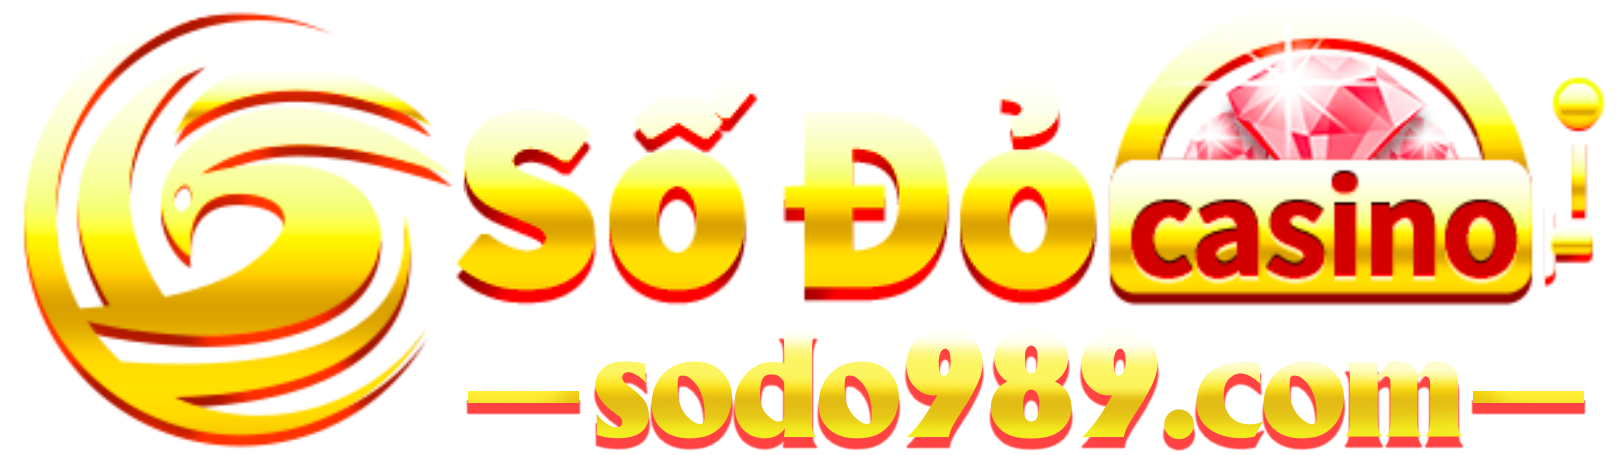 Sodo989.com